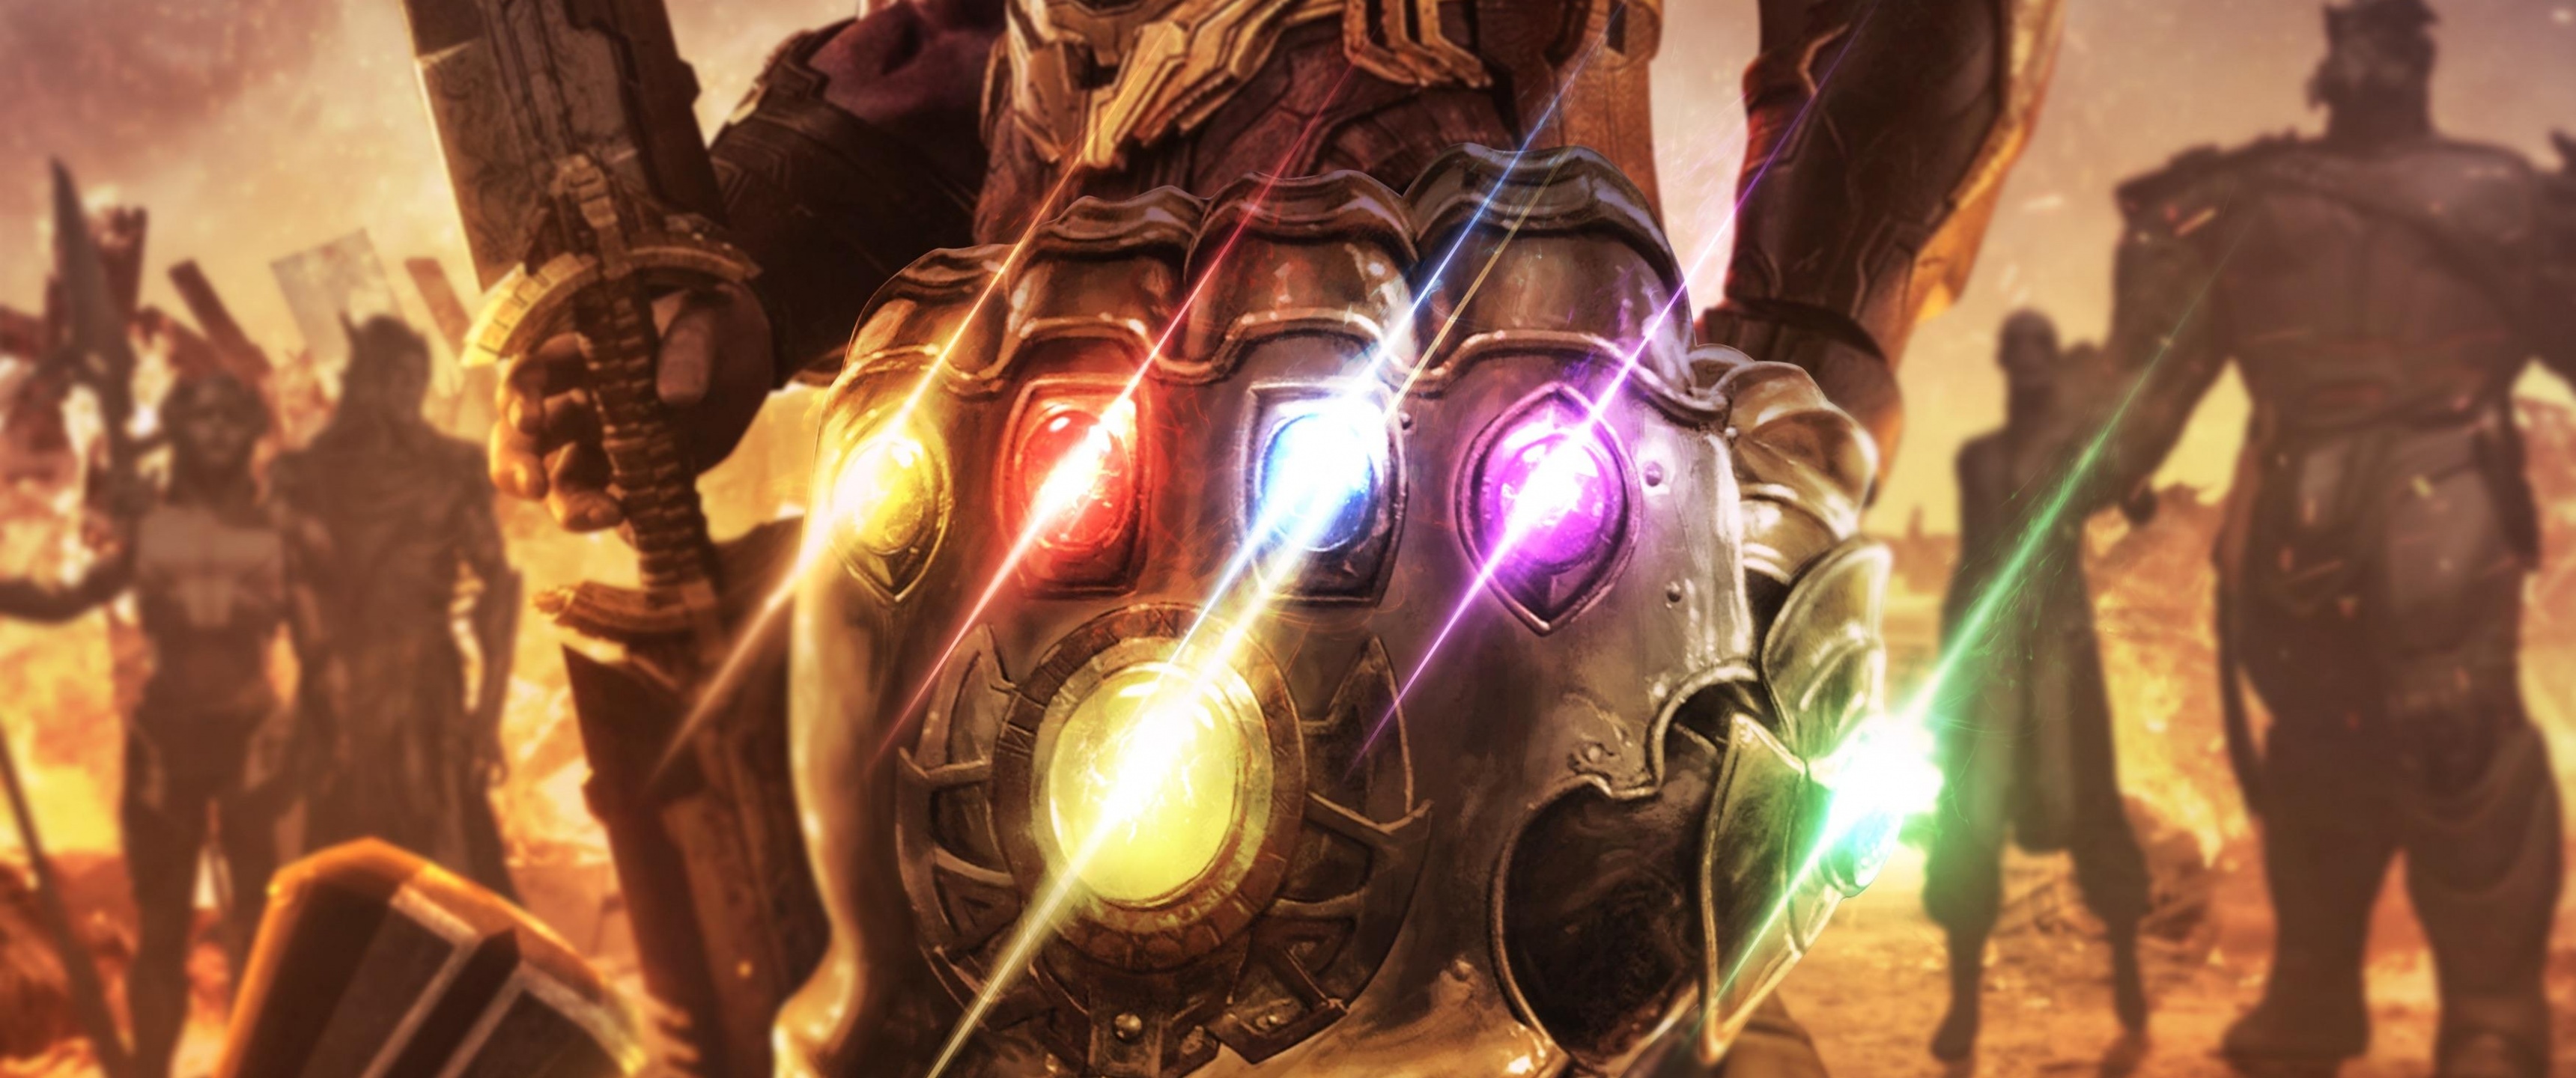 Infinity Gauntlet wallpaper, Avengers Endgame, Infinity stones, 3440x1440 Dual Screen Desktop